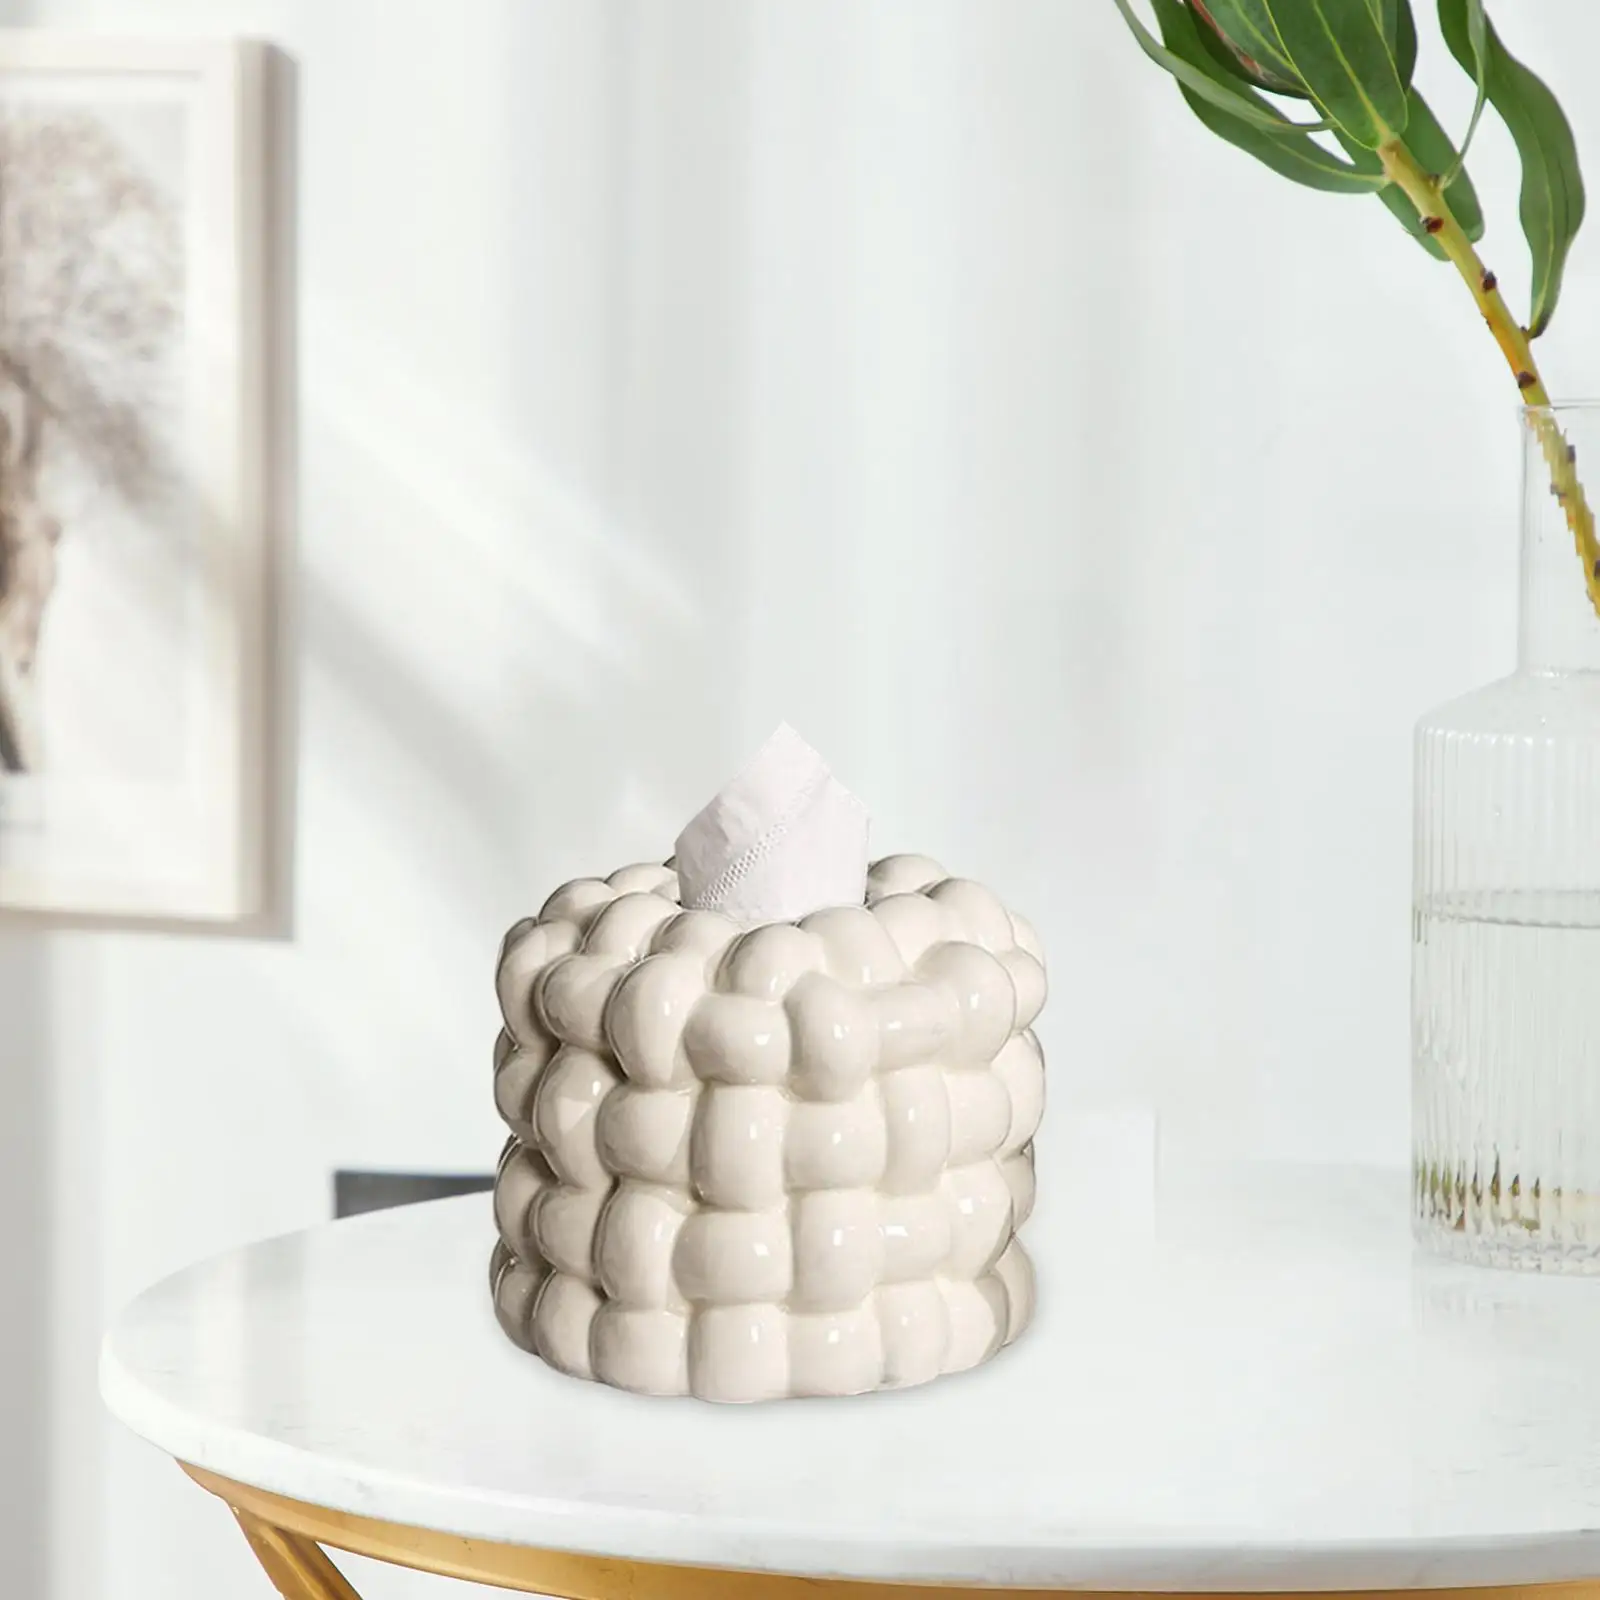 Napkin Holder Organizer Ceramic Tissue Box Holder Chic for Living Room Decor